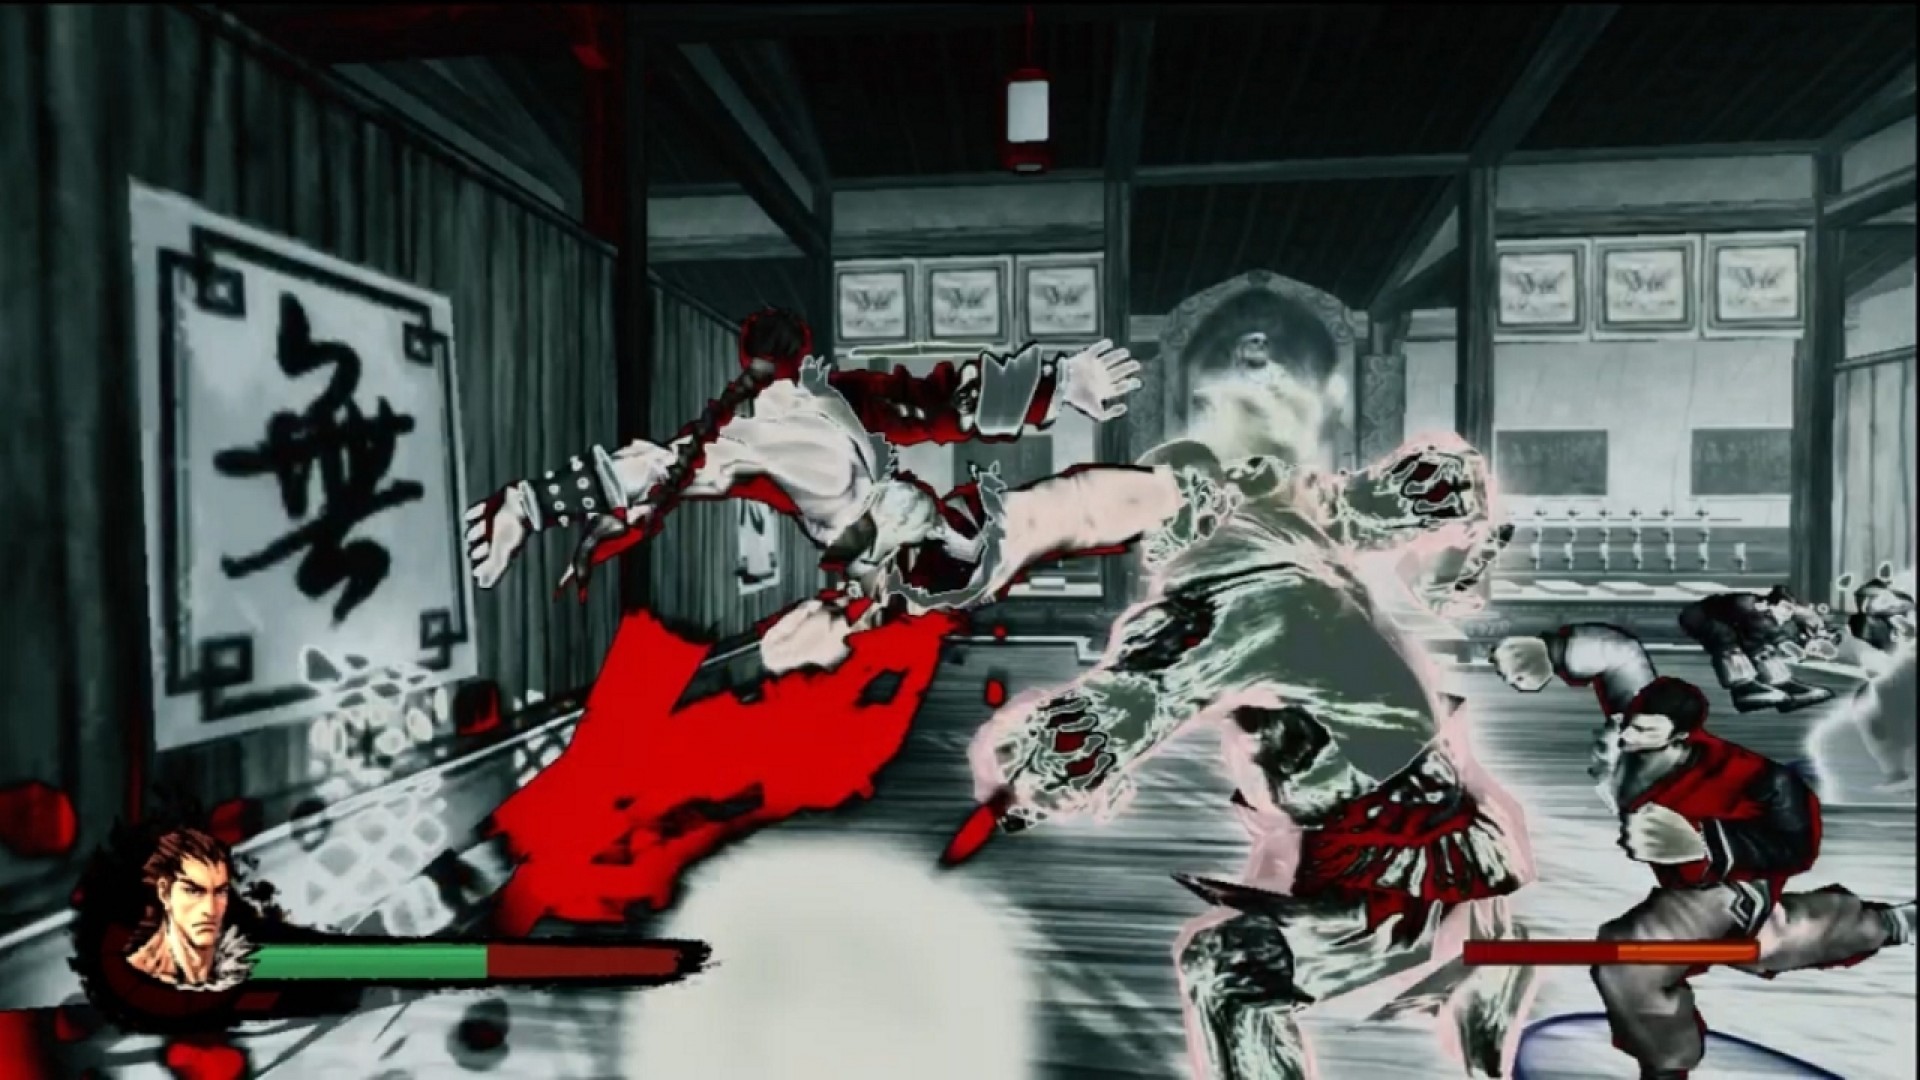 Kung Fu Strike - The Warrior's Rise screenshot